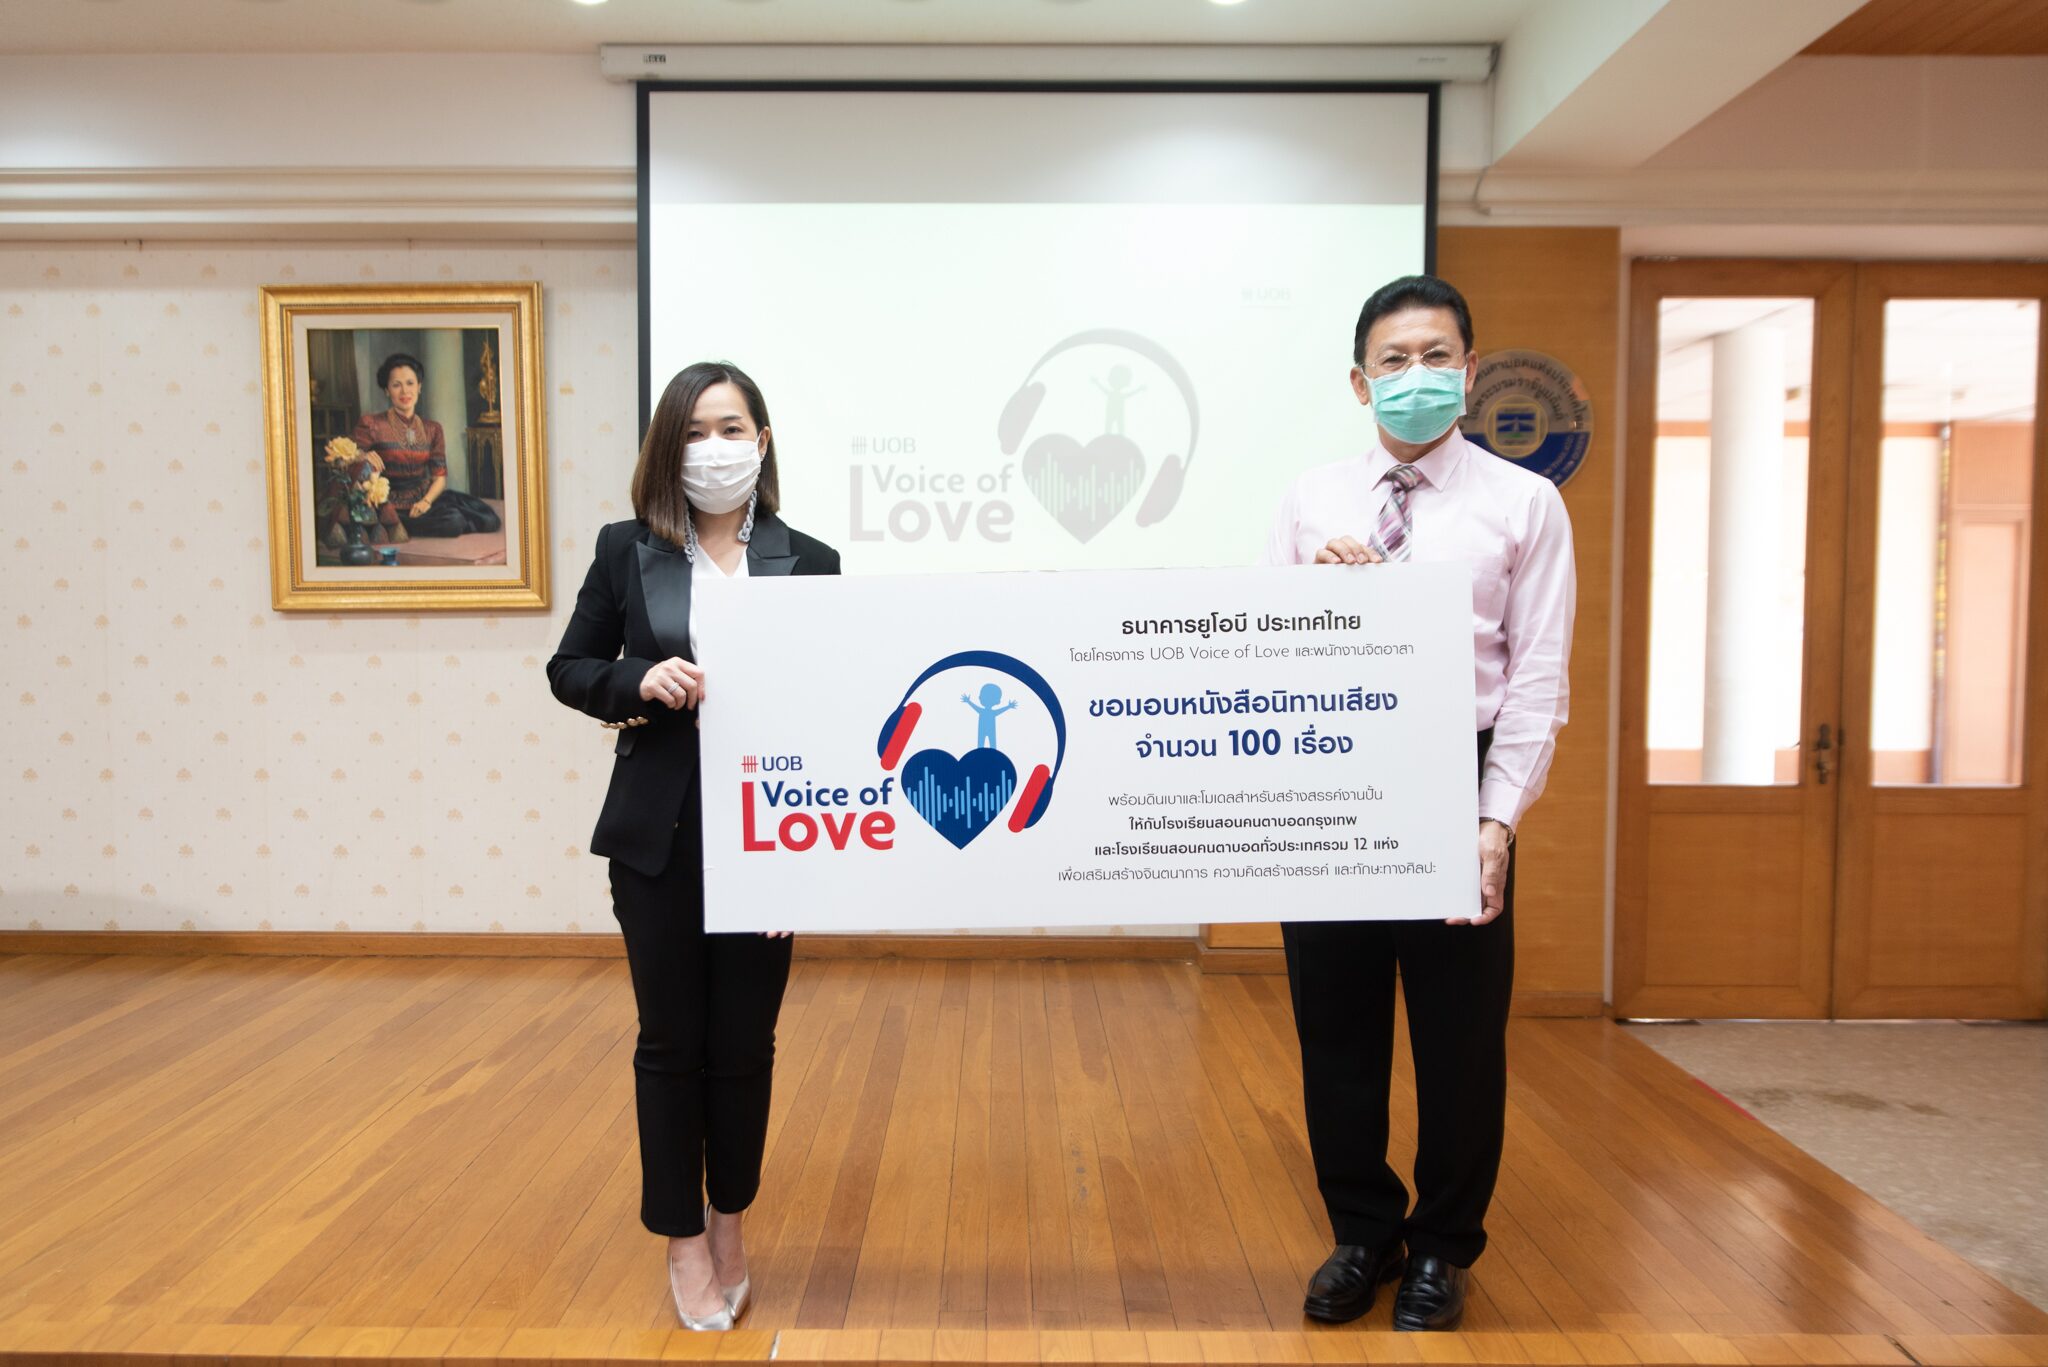 ธนาคารยูโอบี ประเทศไทย จัดทำ โครงการหนังสือนิทานเสียง UOB Voice of Love